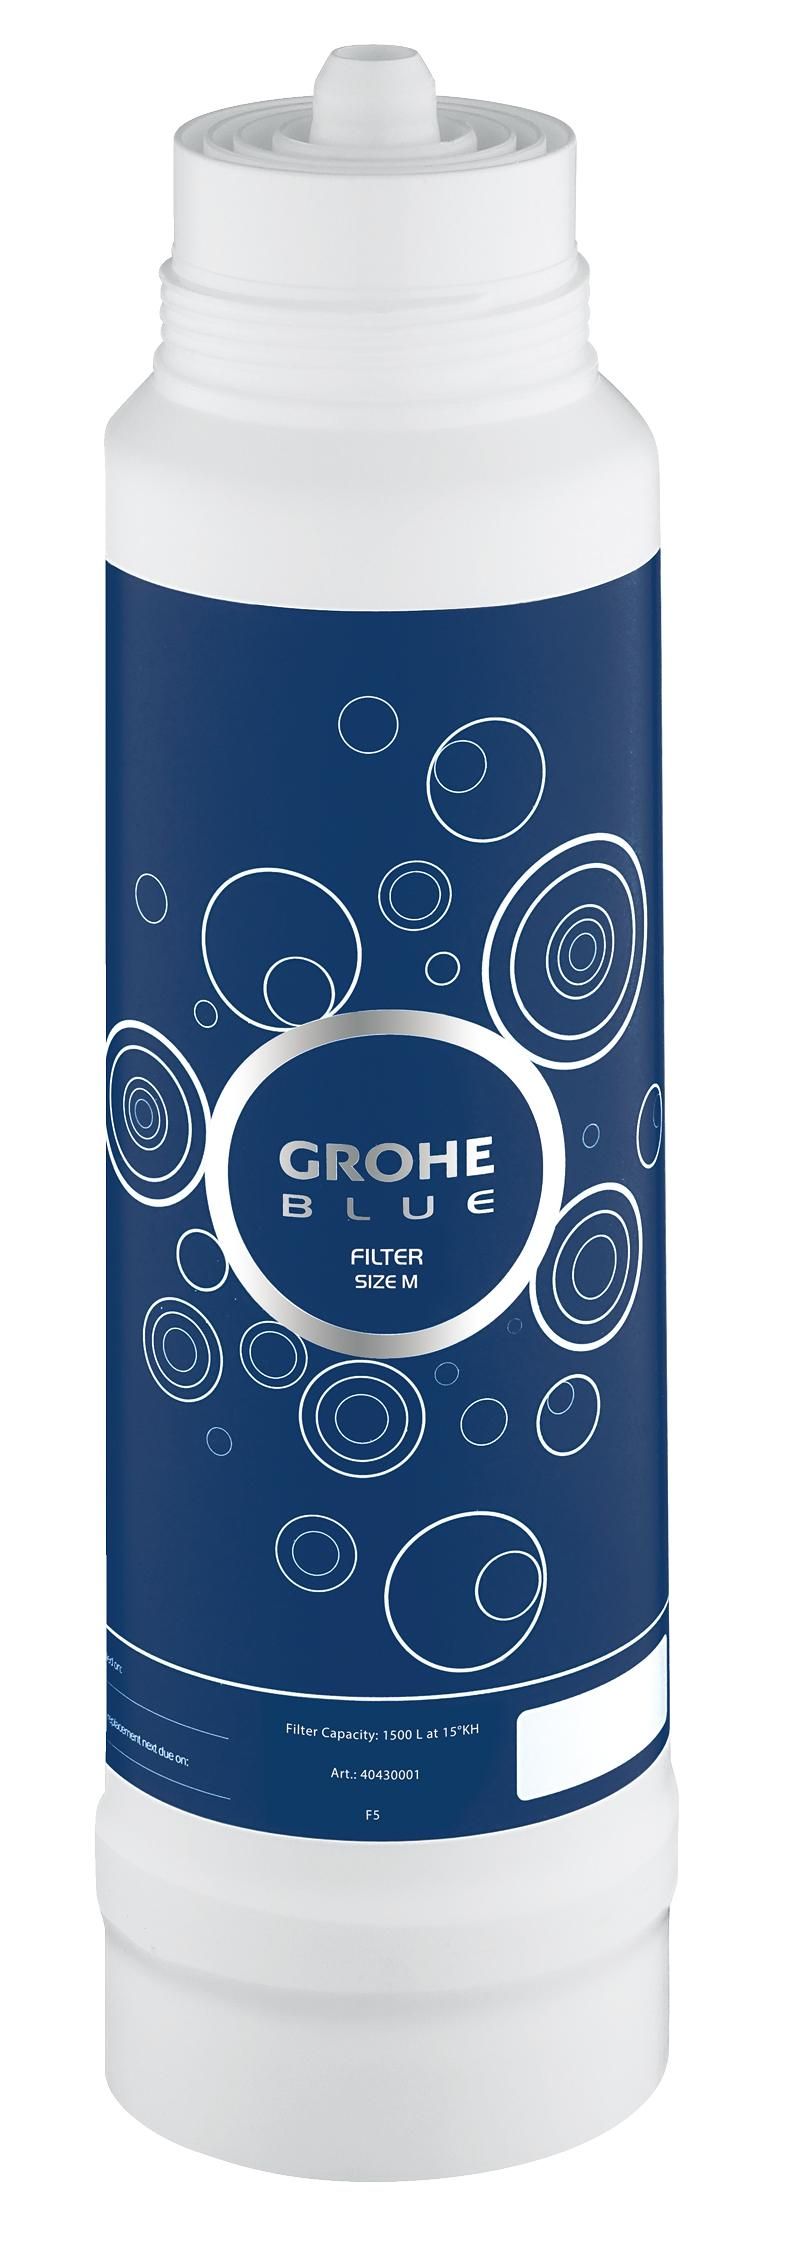 Сменный фильтр для водных систем GROHE Blue (1500 литров) new 